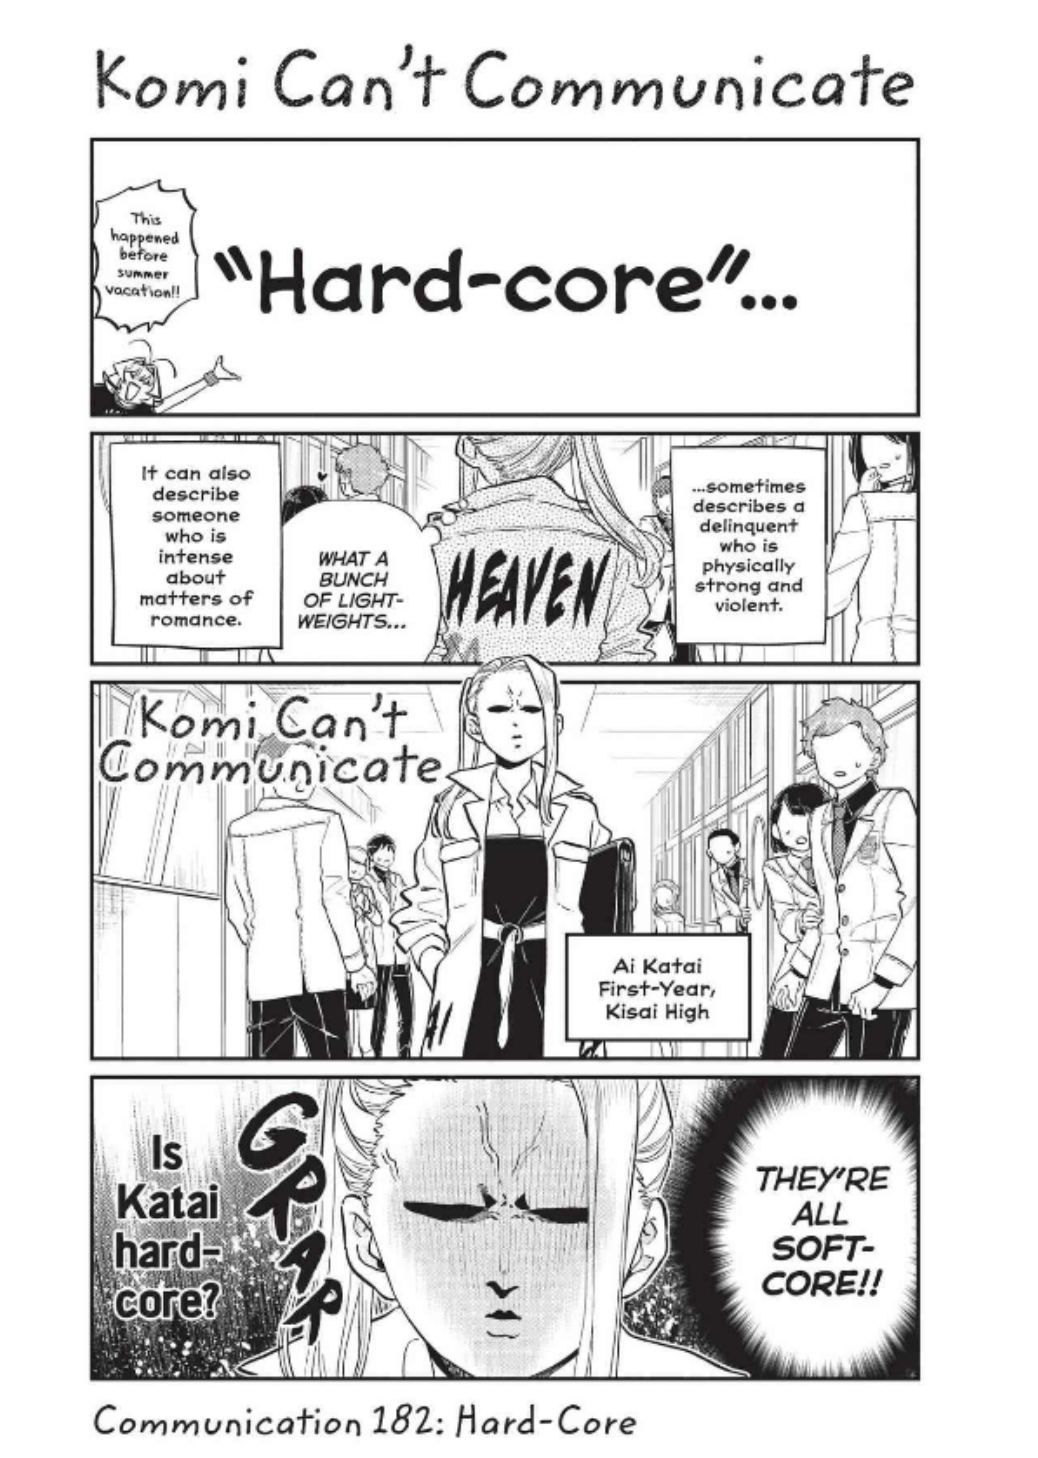 Komi Can't Communicate, Chapter 432 - Komi Can't Communicate Manga Online